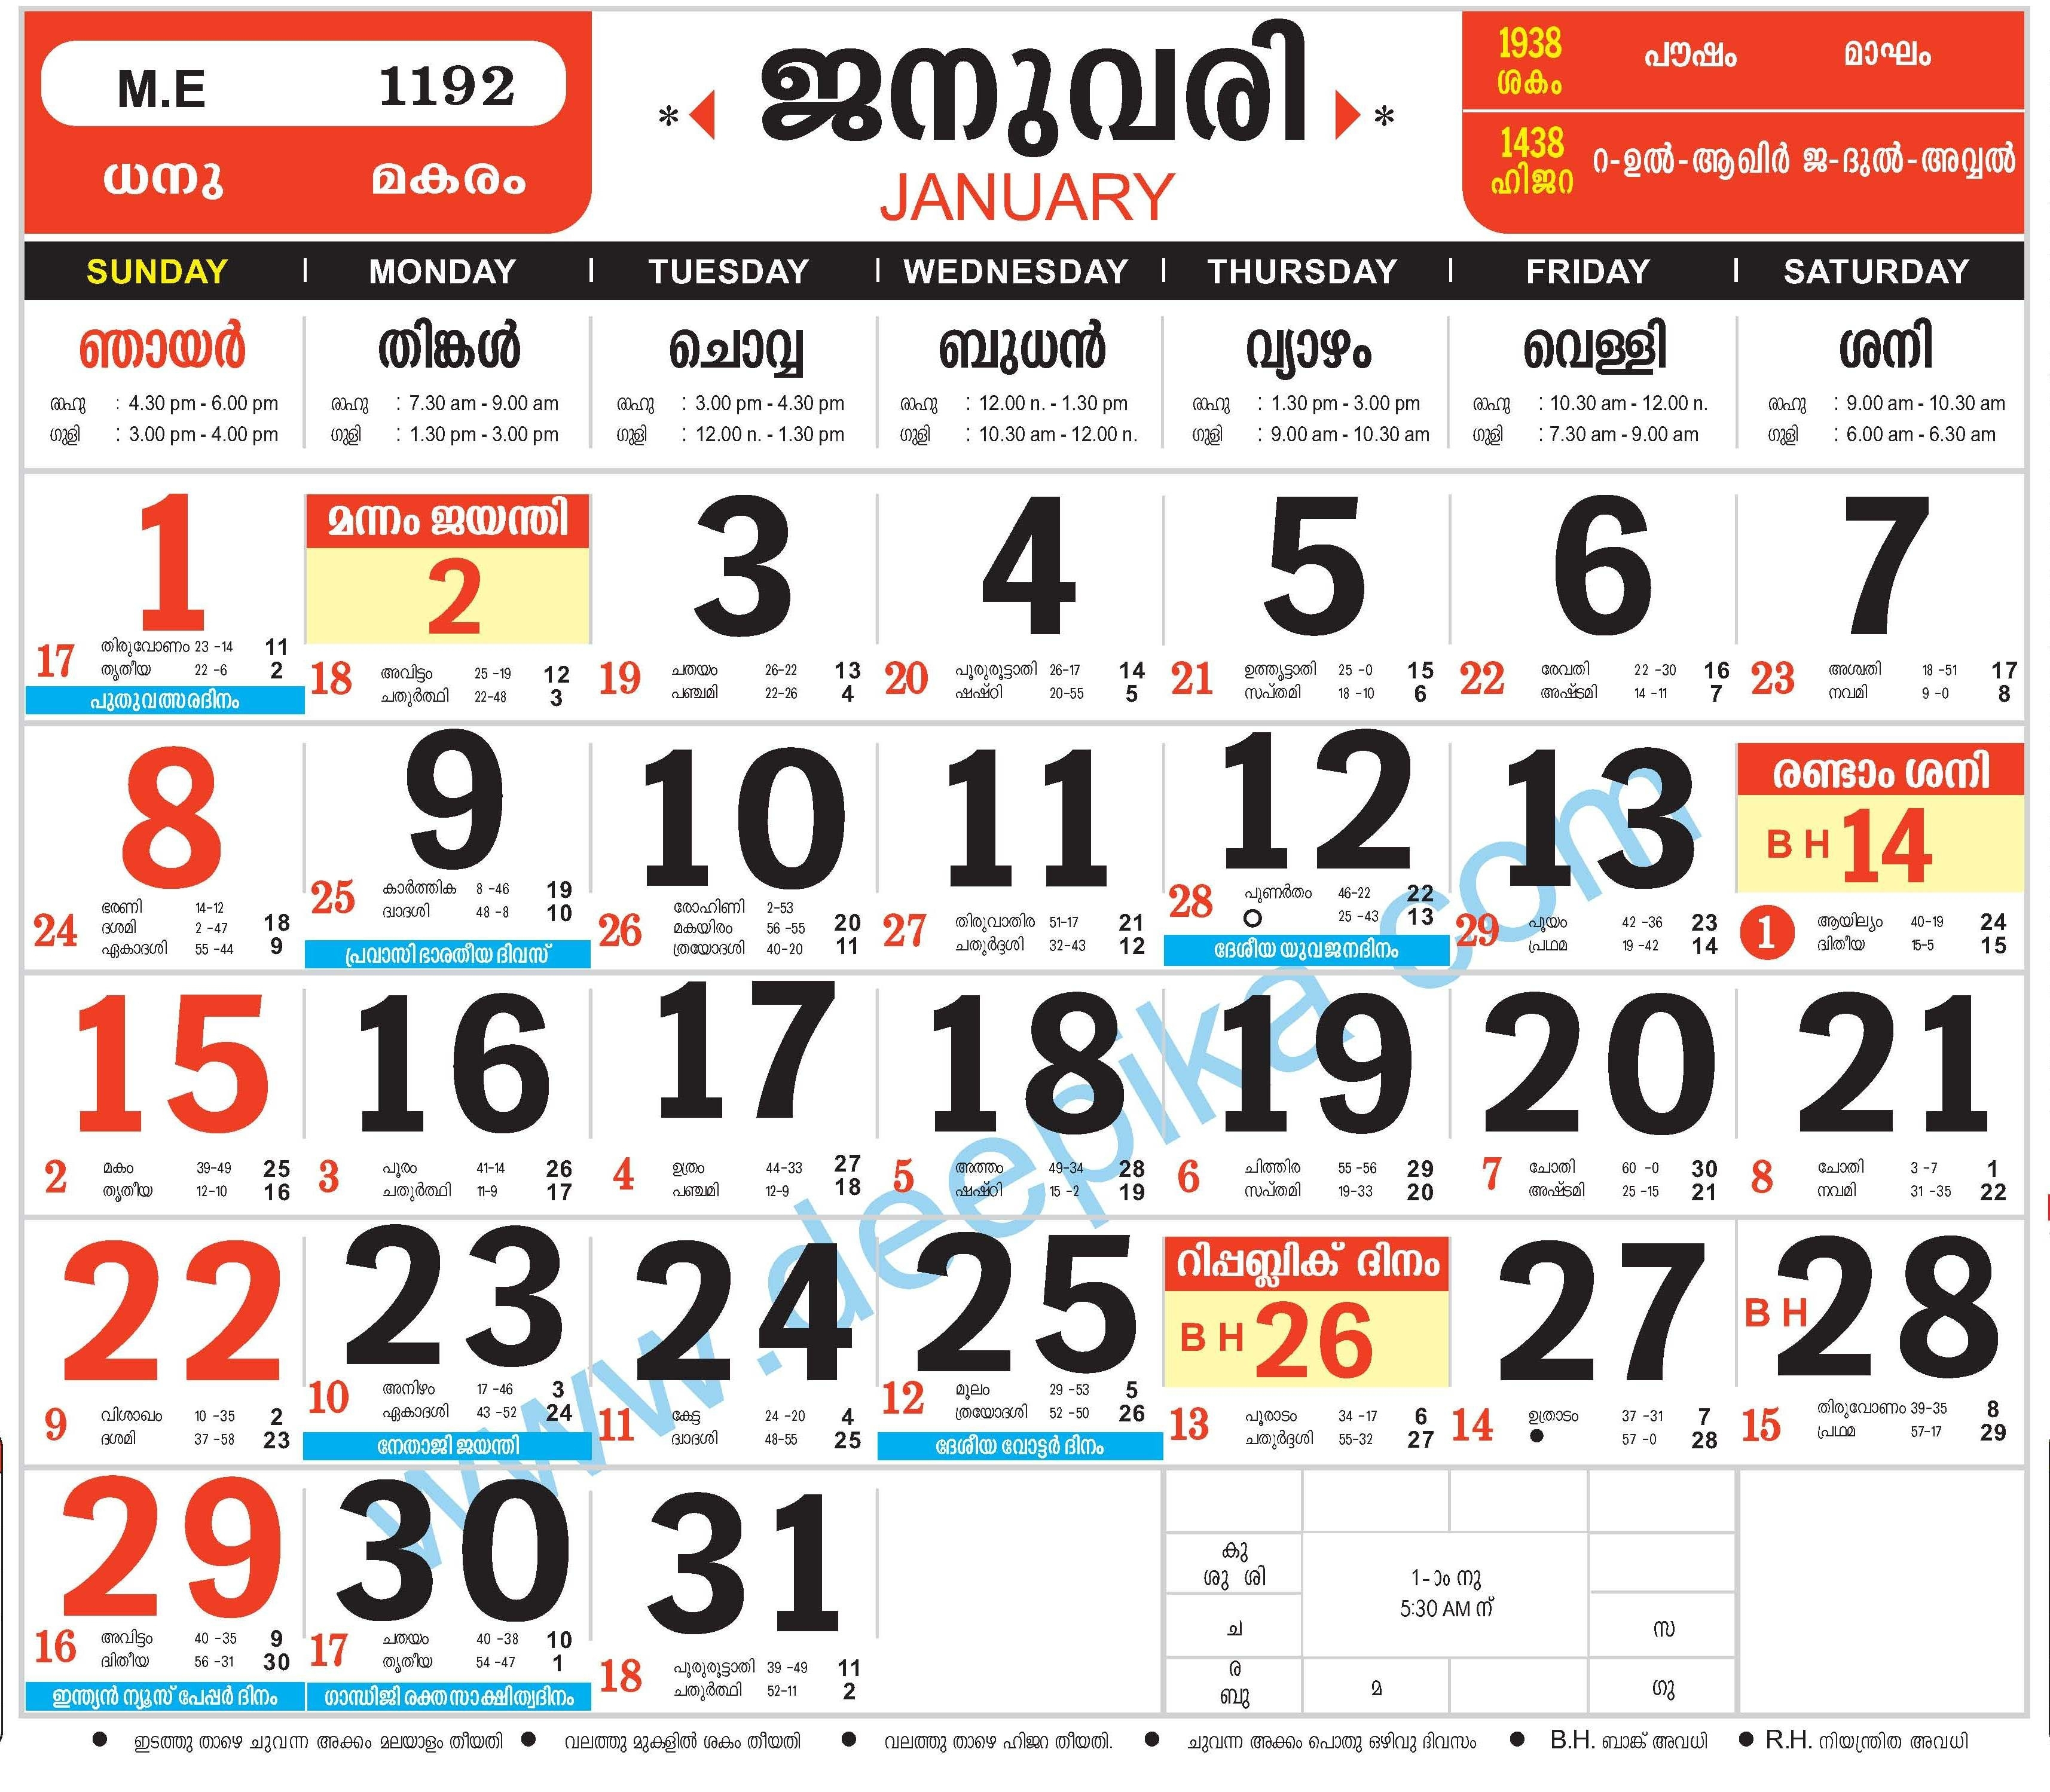 Malayalam Calendar January 2020 | Calendar Template Information with Malayala Manorama Calendar 2020 September